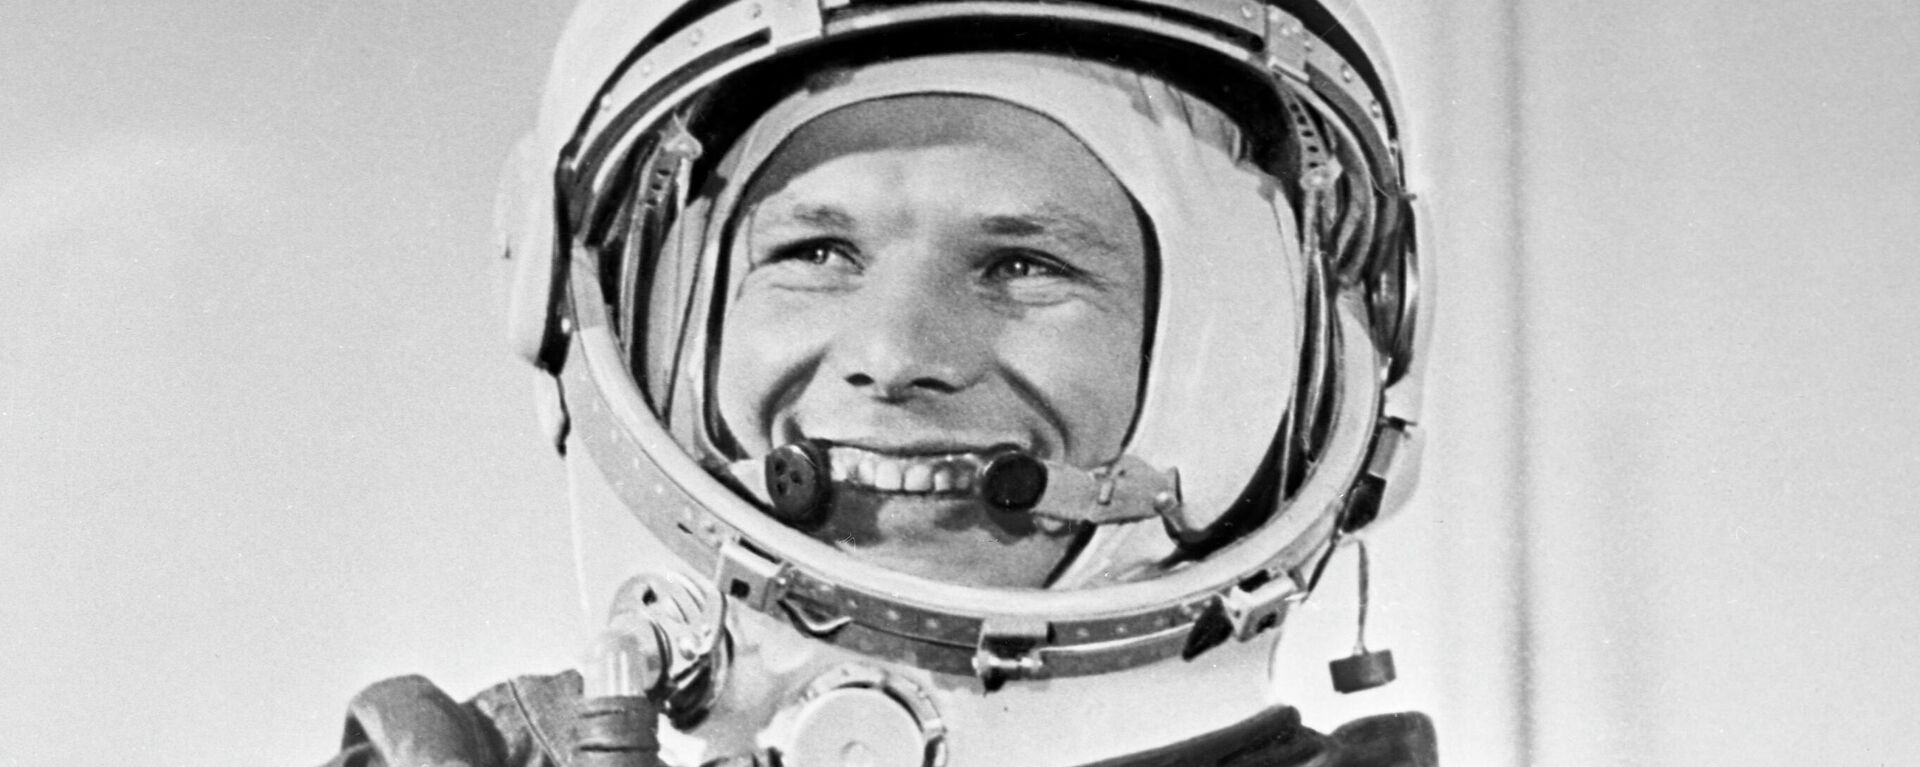 El cosmonauta soviético Yuri Gagarin con su traje espacial antes del histórico lanzamiento de la nave espacial Vostok-1 desde el cosmódromo de Baikonur el 12 de abril de 1961 - Sputnik Mundo, 1920, 10.12.2022